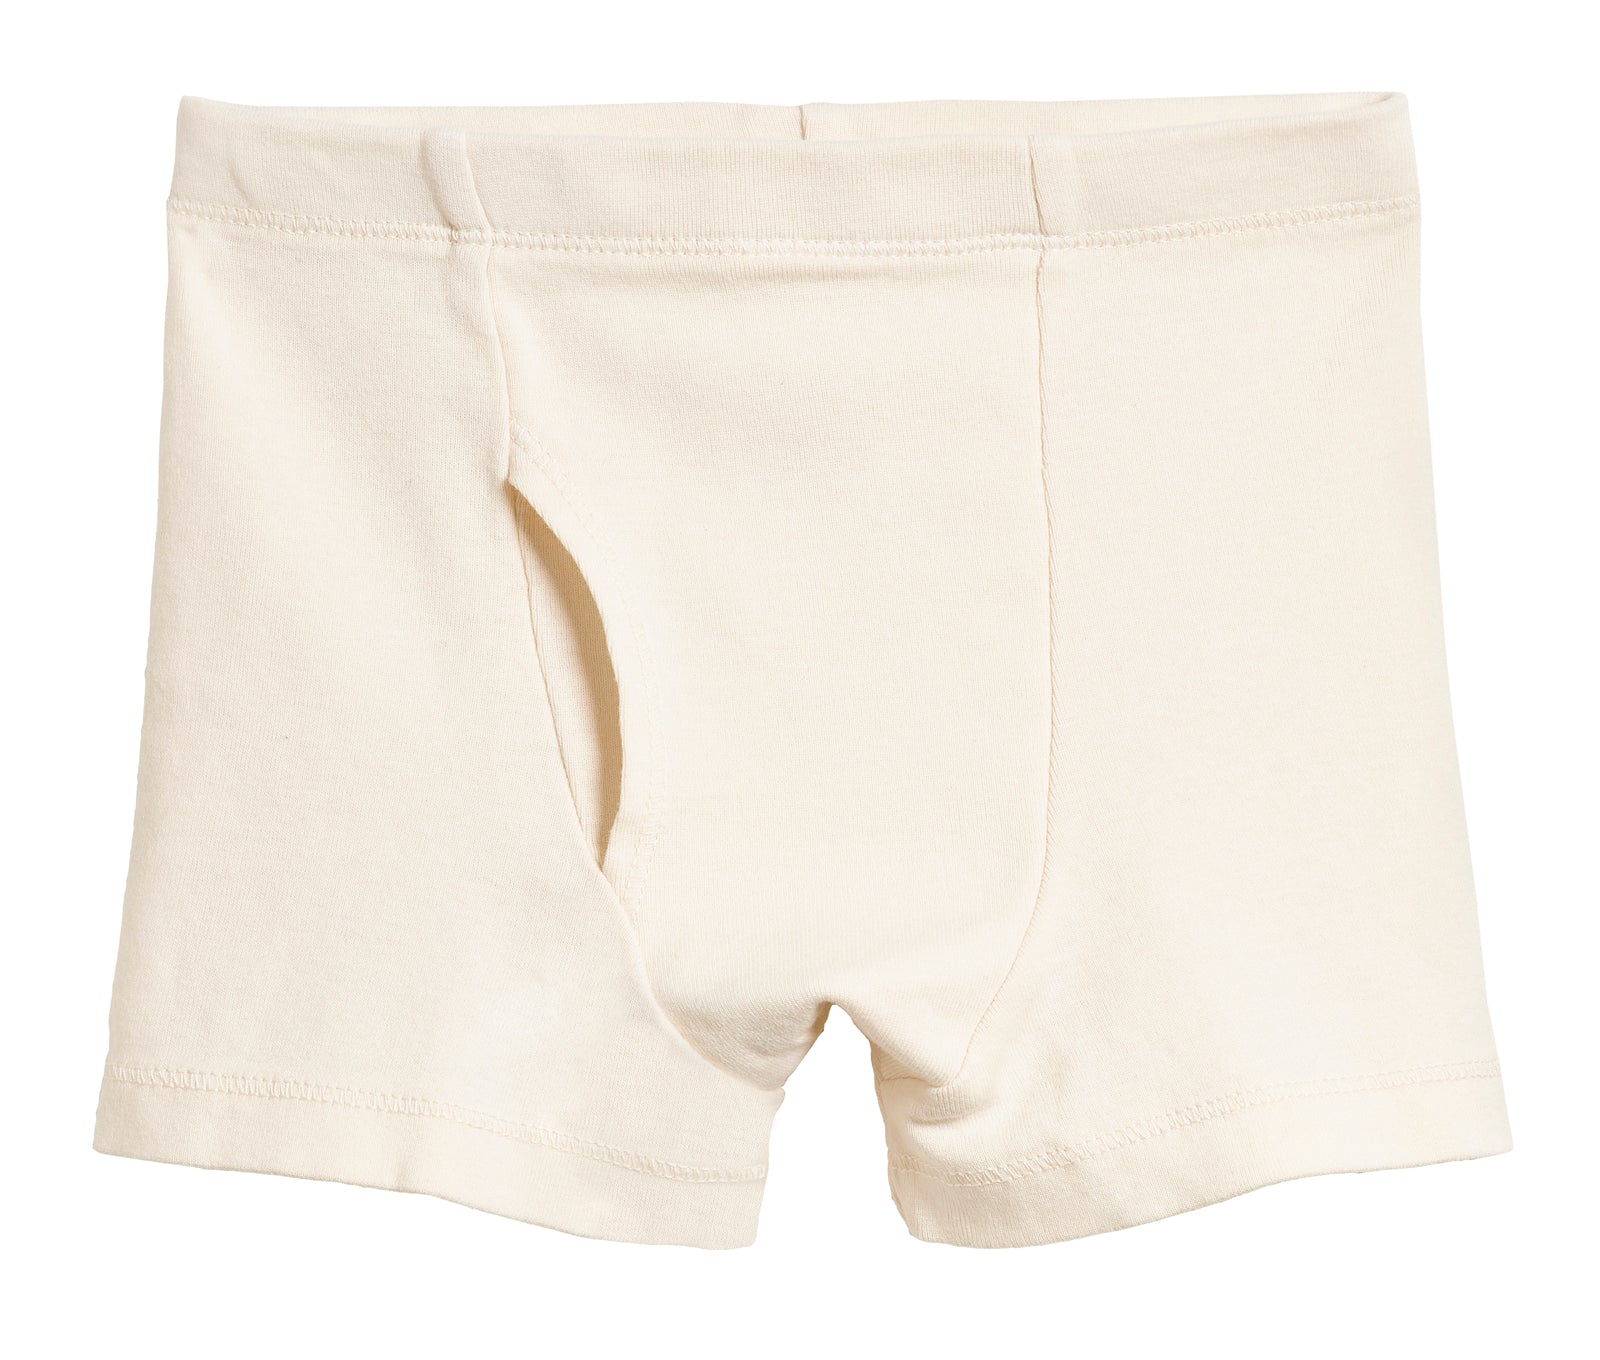 Organic cotton briefs, Cotton Planet, white, Men's Underwear